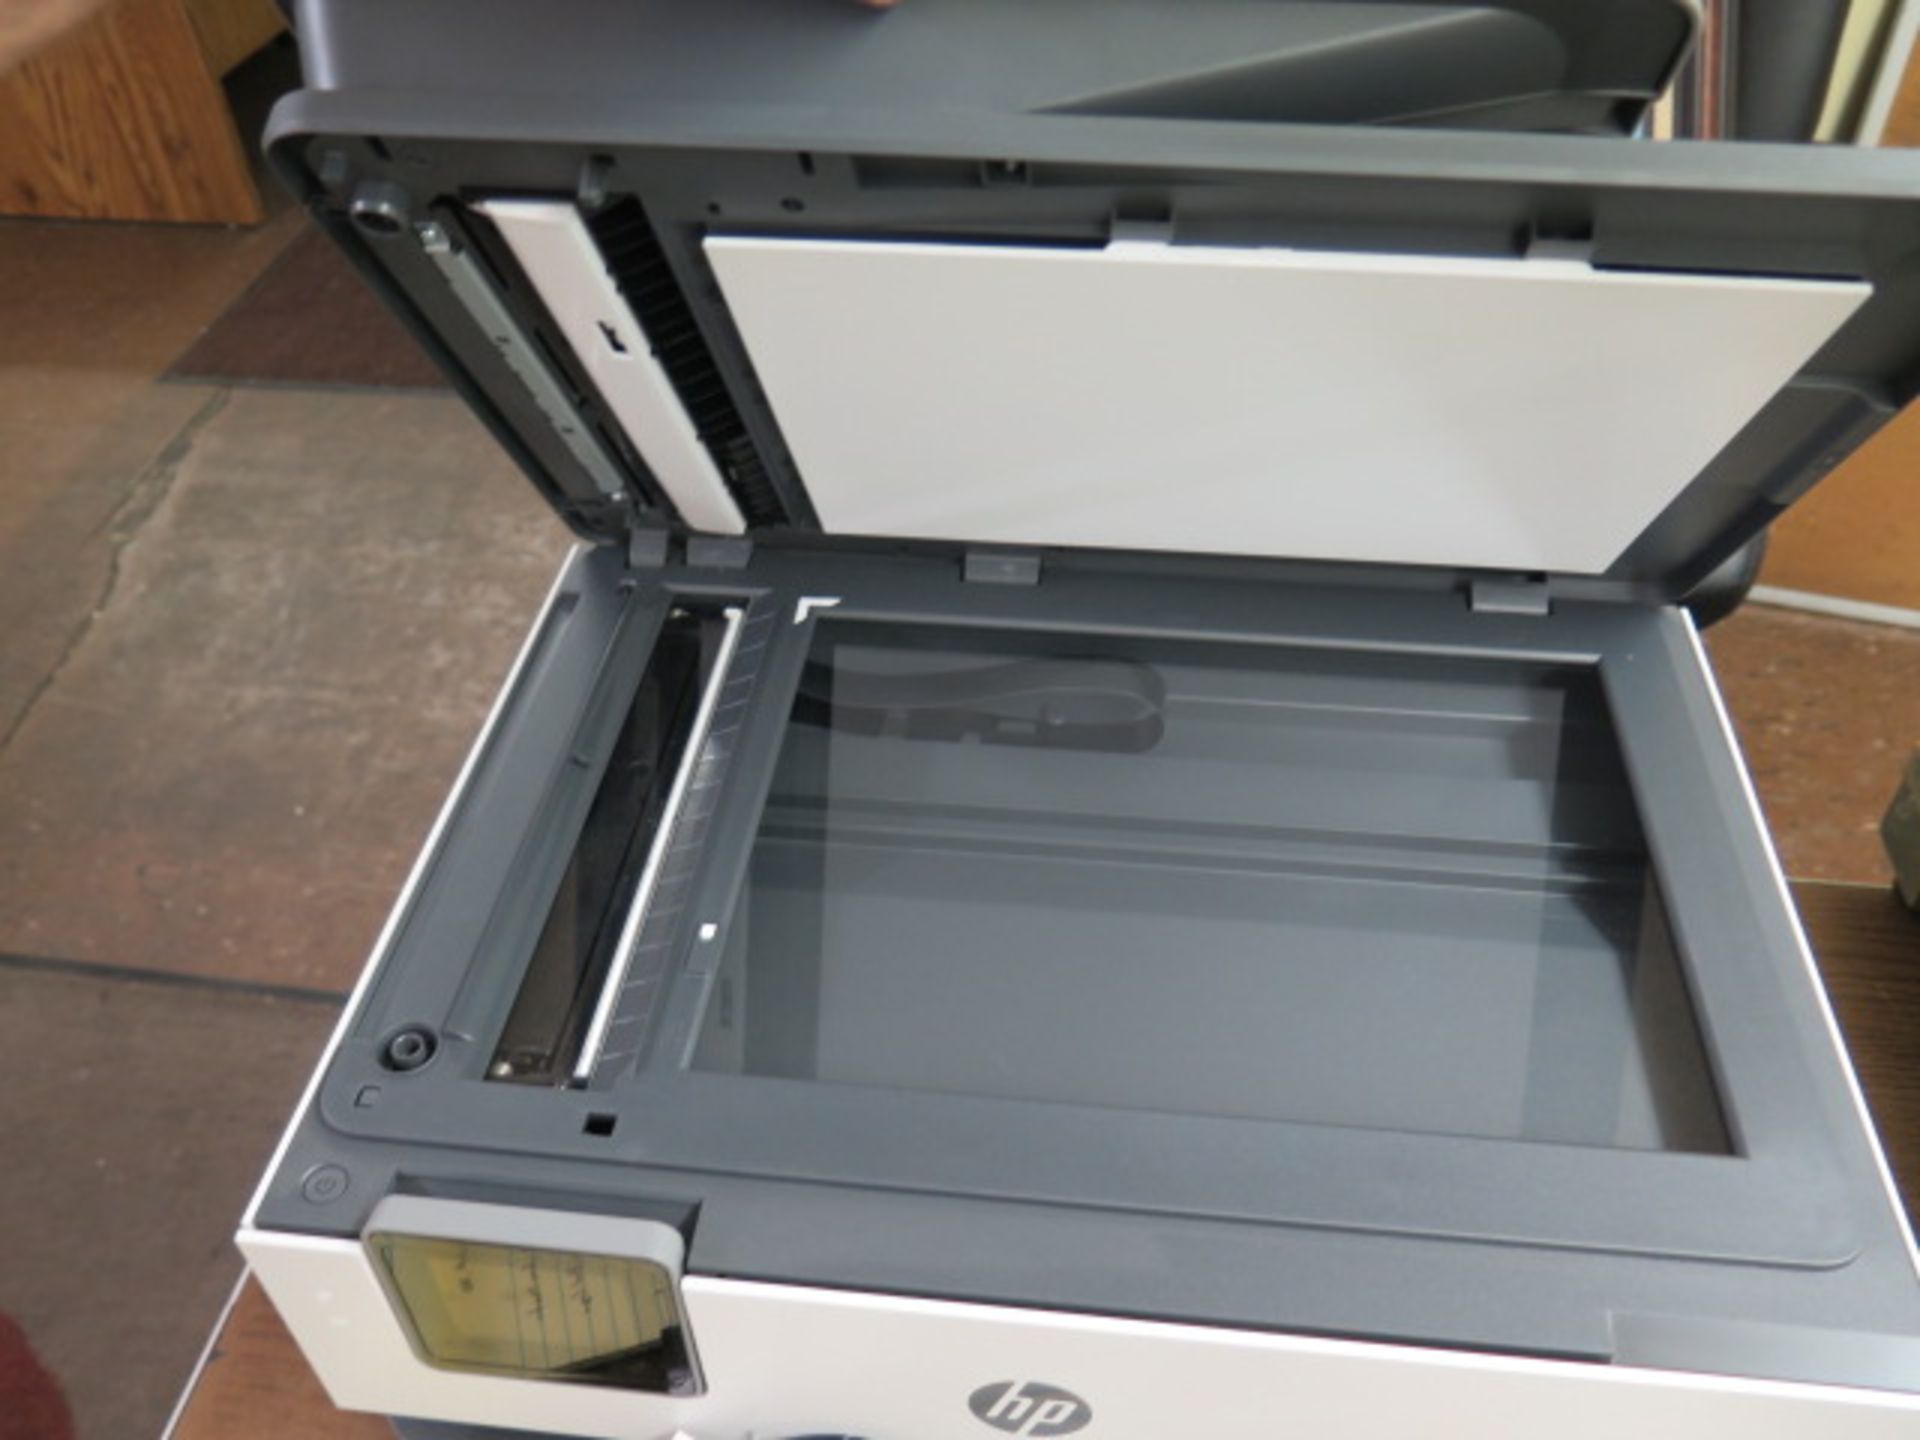 Hewlett Packard OfficeJet Pro 825 Office Copier/Printer (SOLD AS-IS - NO WARRANTY) - Image 4 of 5